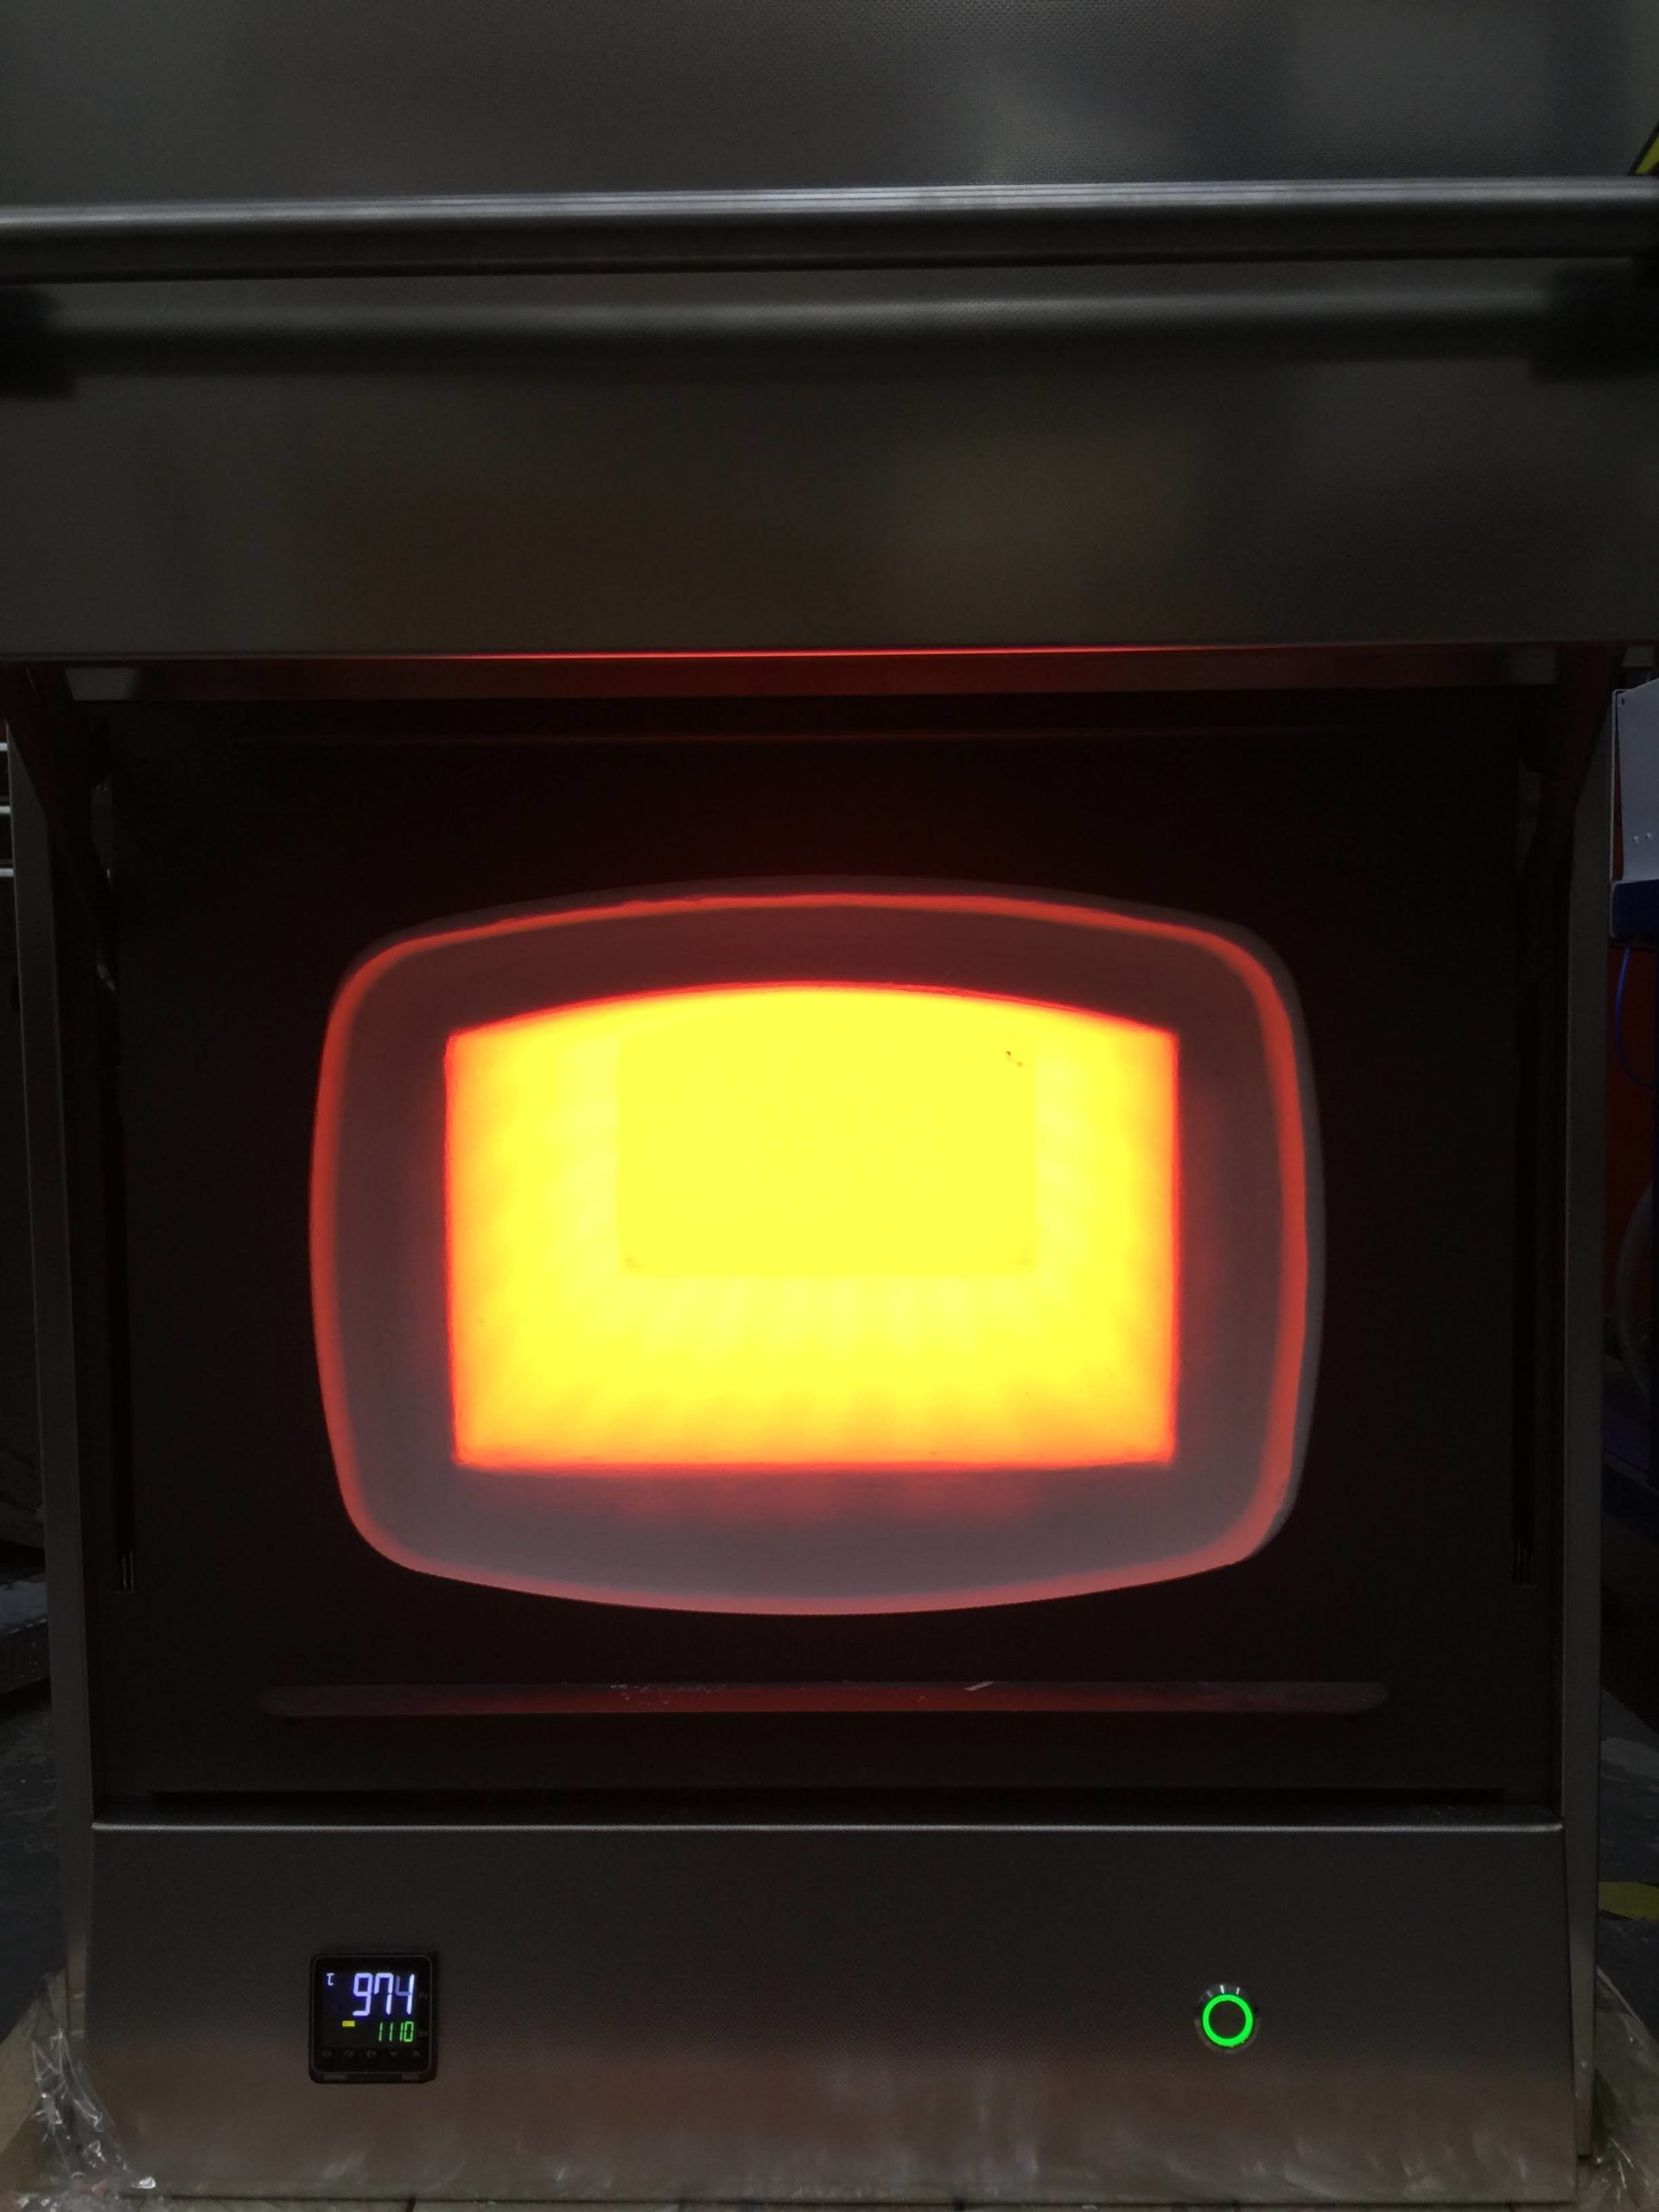 snol 22/1100 high temperature furnace – display model